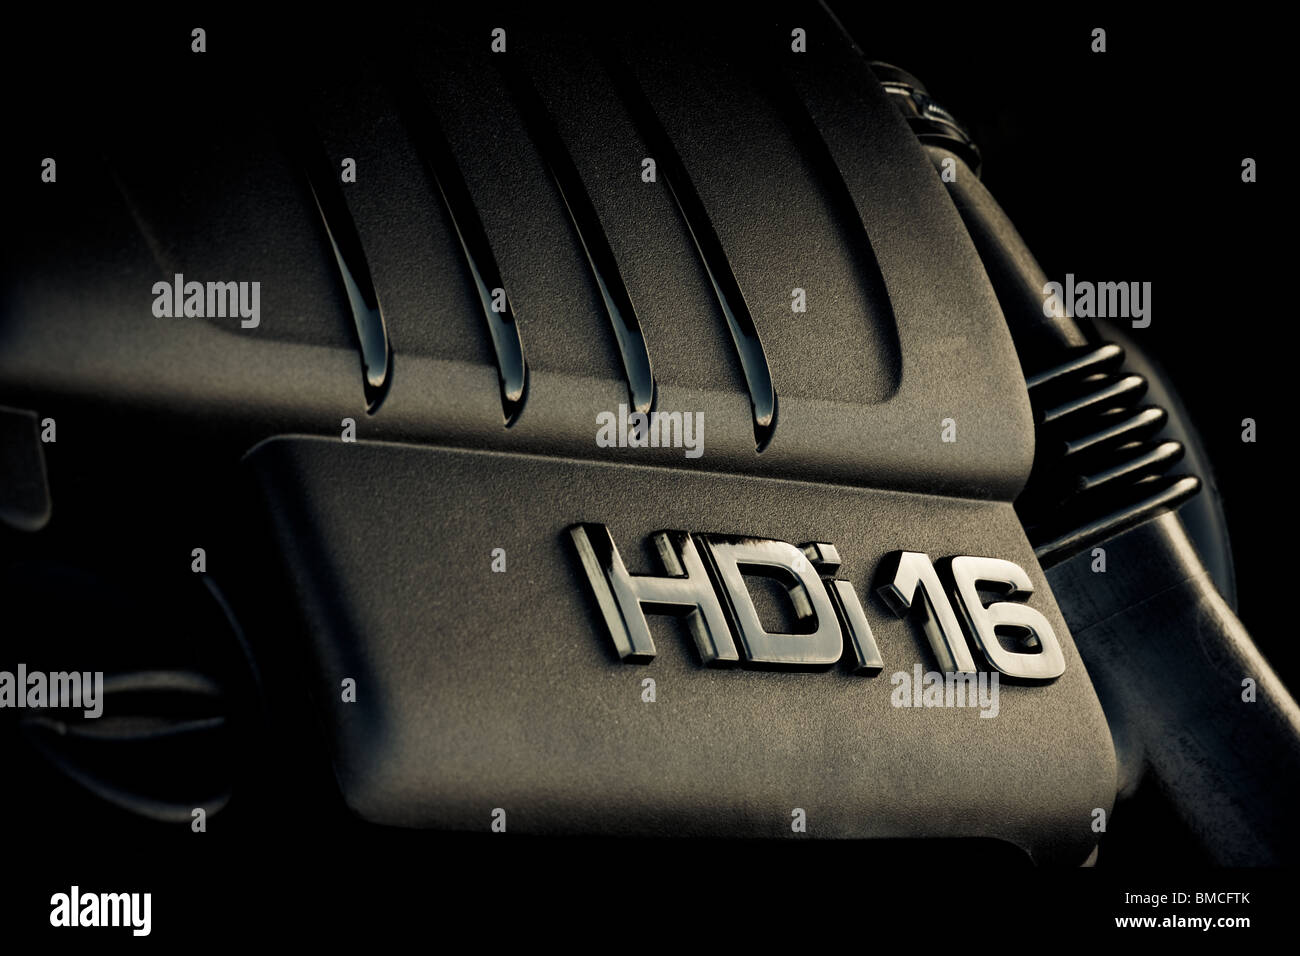 HDI 16 Ventile, Nahaufnahme Schuss von Auto-Turbodiesel-Motor. Geringe  Schärfentiefe Stockfotografie - Alamy